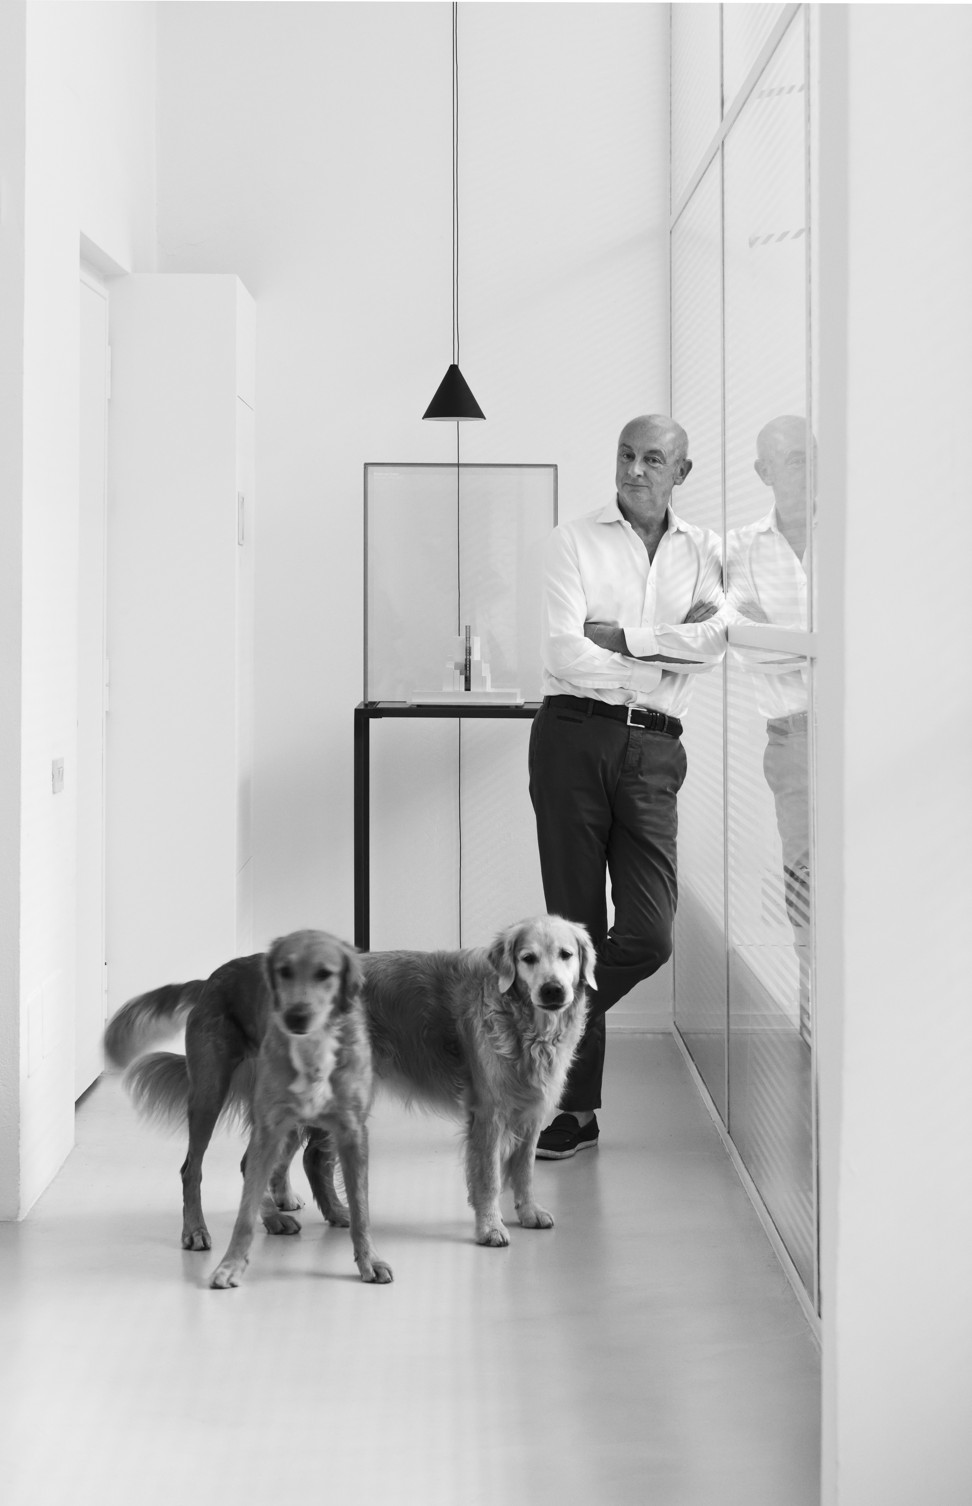 Piero Lissoni, the Milan-based designer of The Middle House. Photo: malgarini.eu